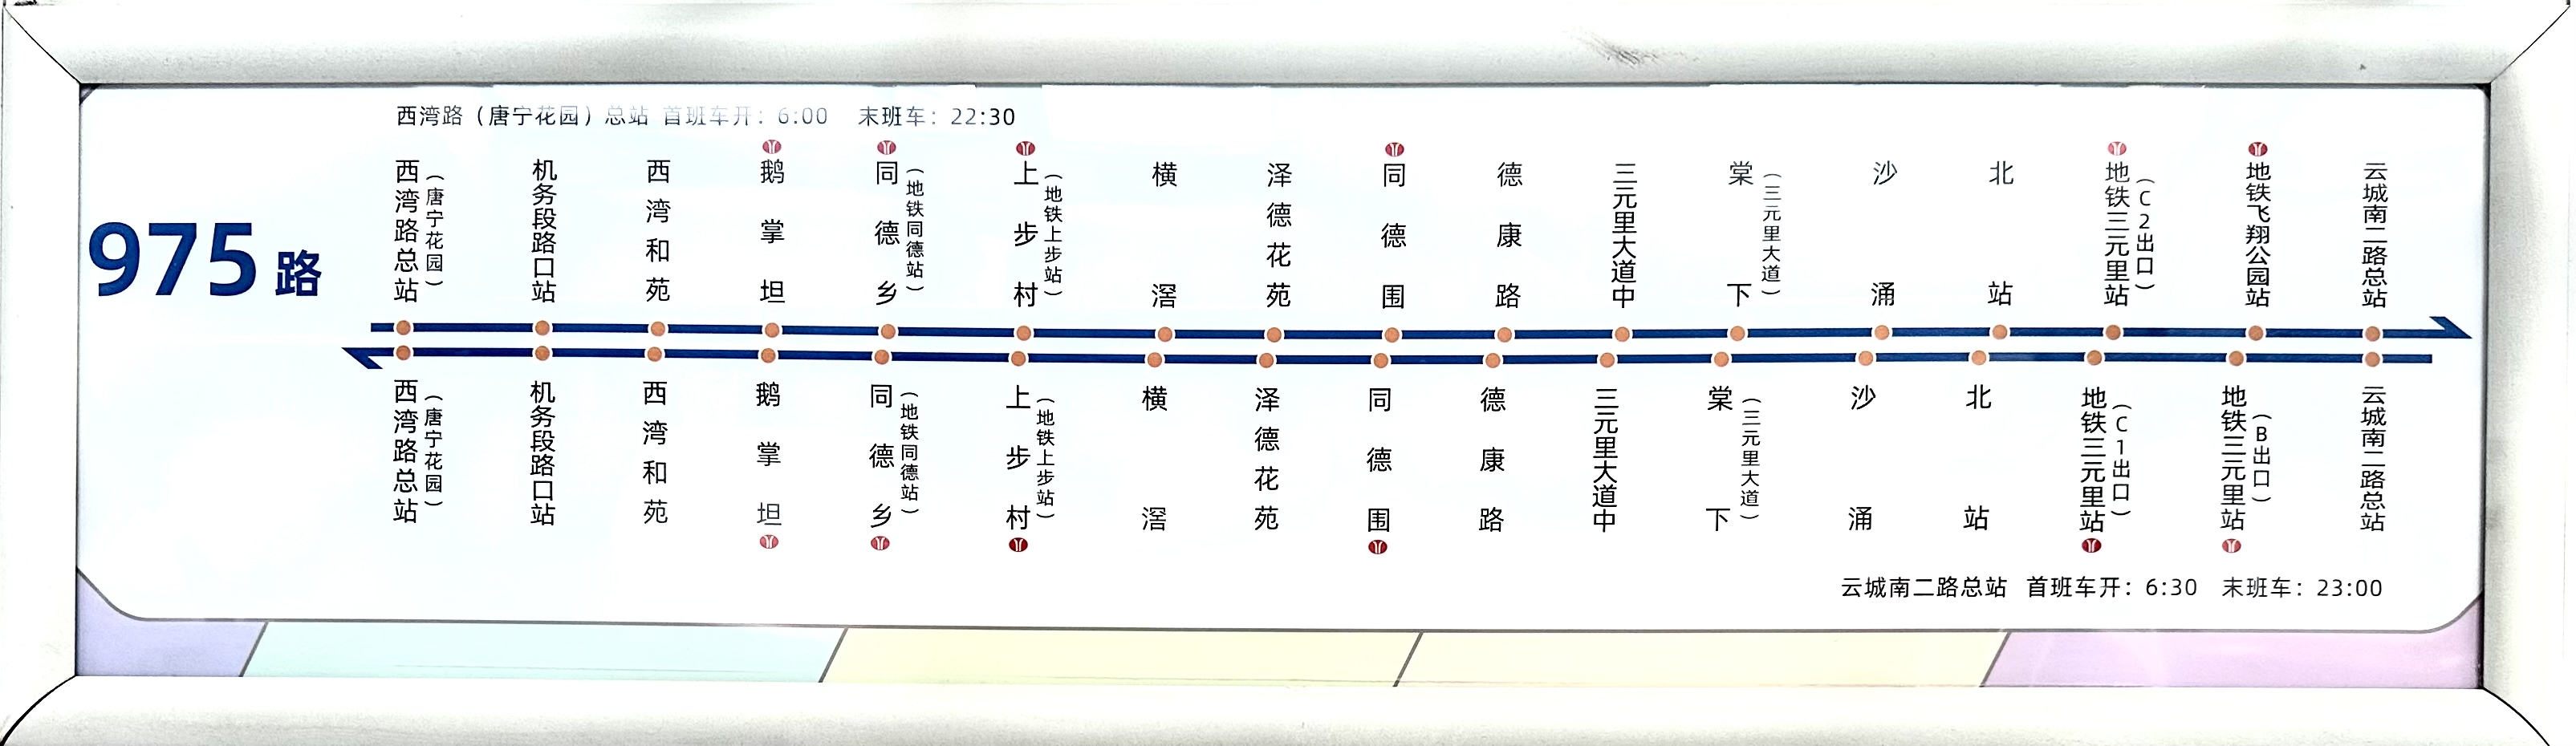 广州975路公交车路线